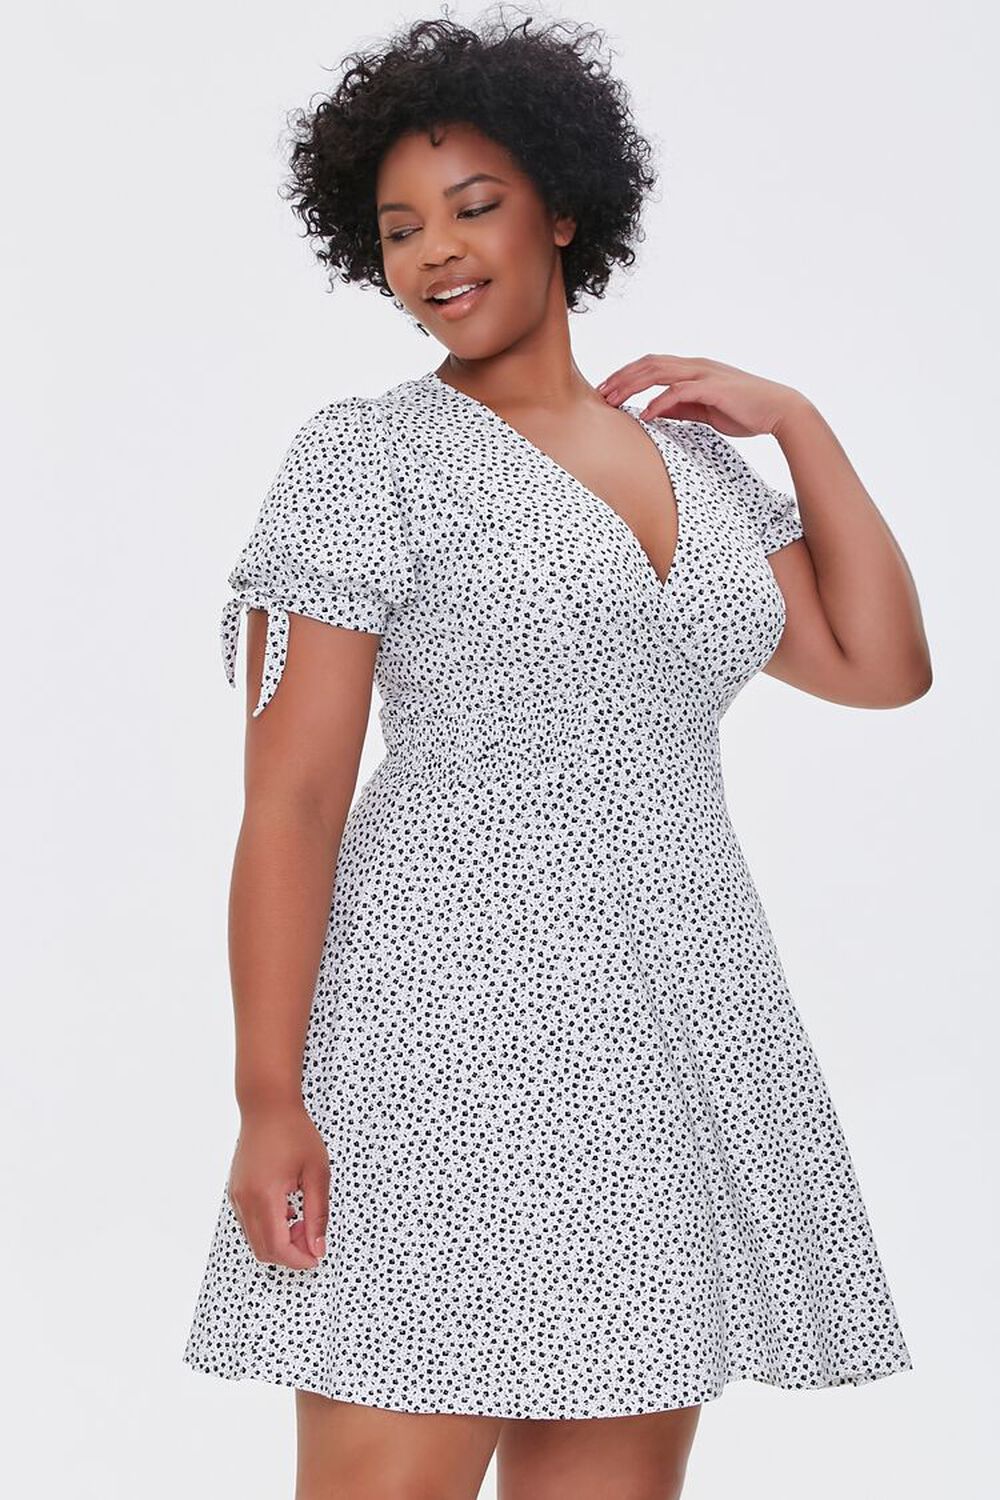 BLACK/WHITE Plus Size Polka Dot Dress, image 1